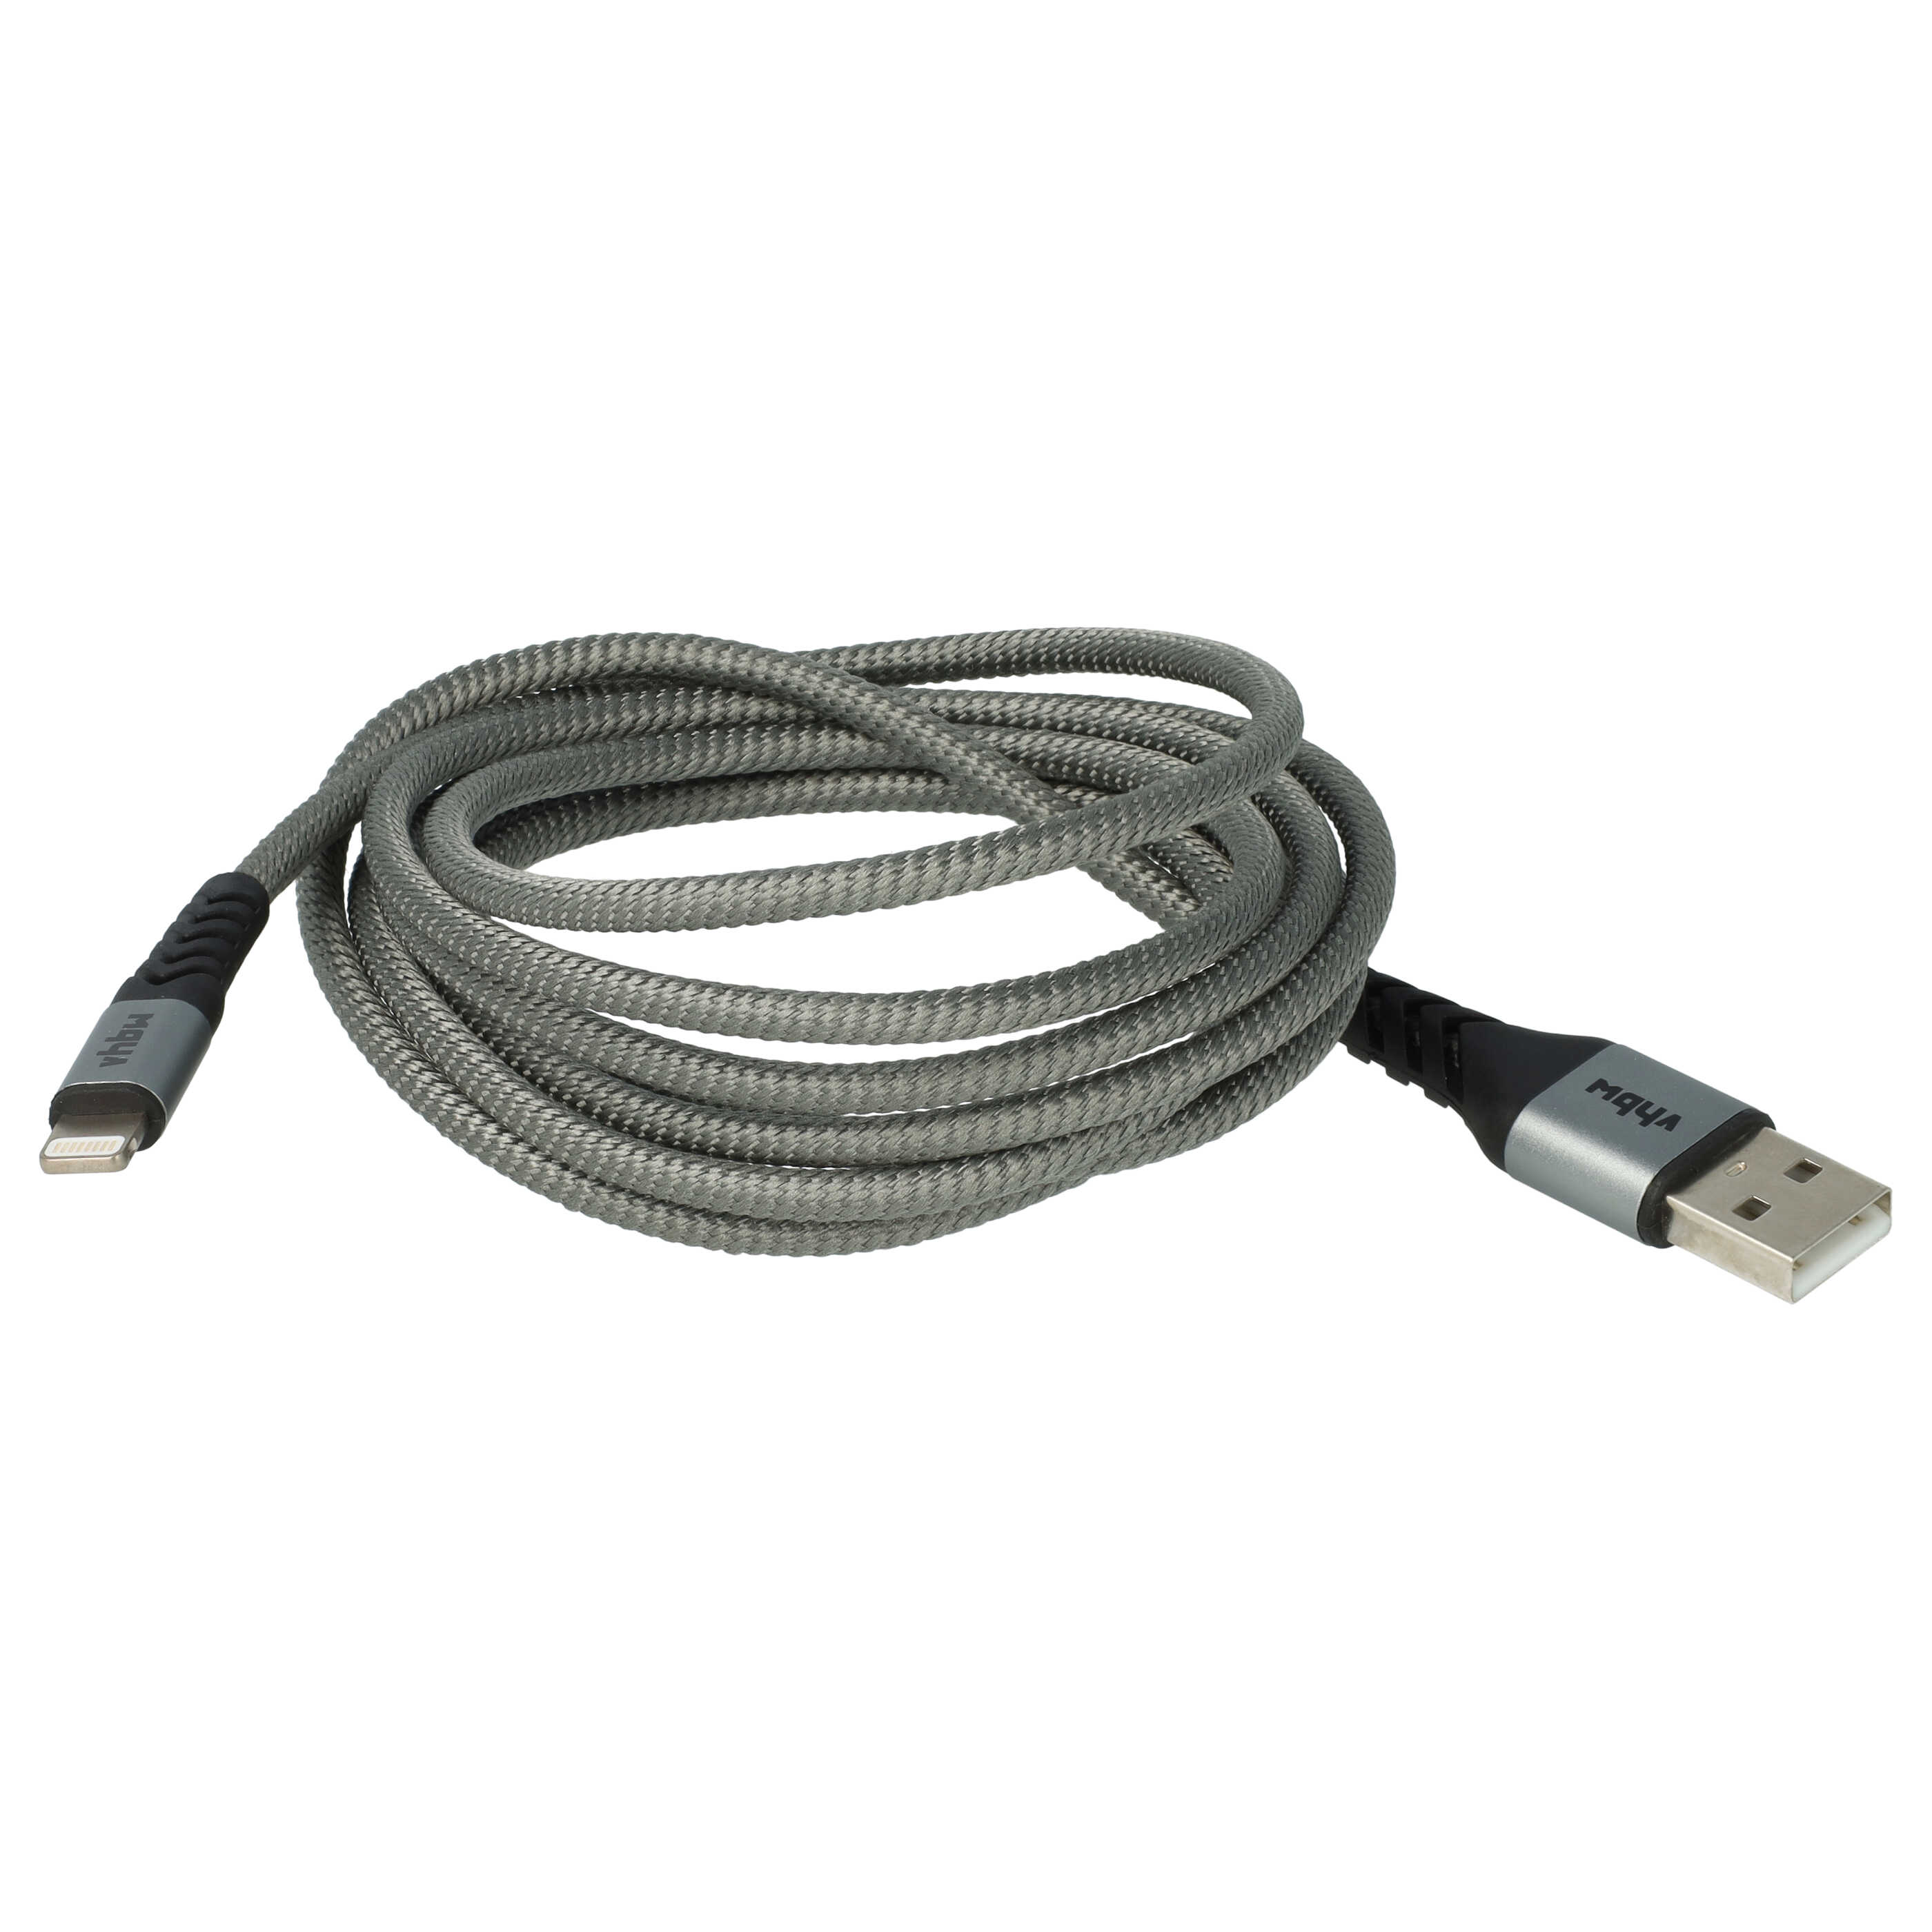 Lightning Kabel auf USB A passend für Apple iOS Geräte - Schwarz Grau, 180cm